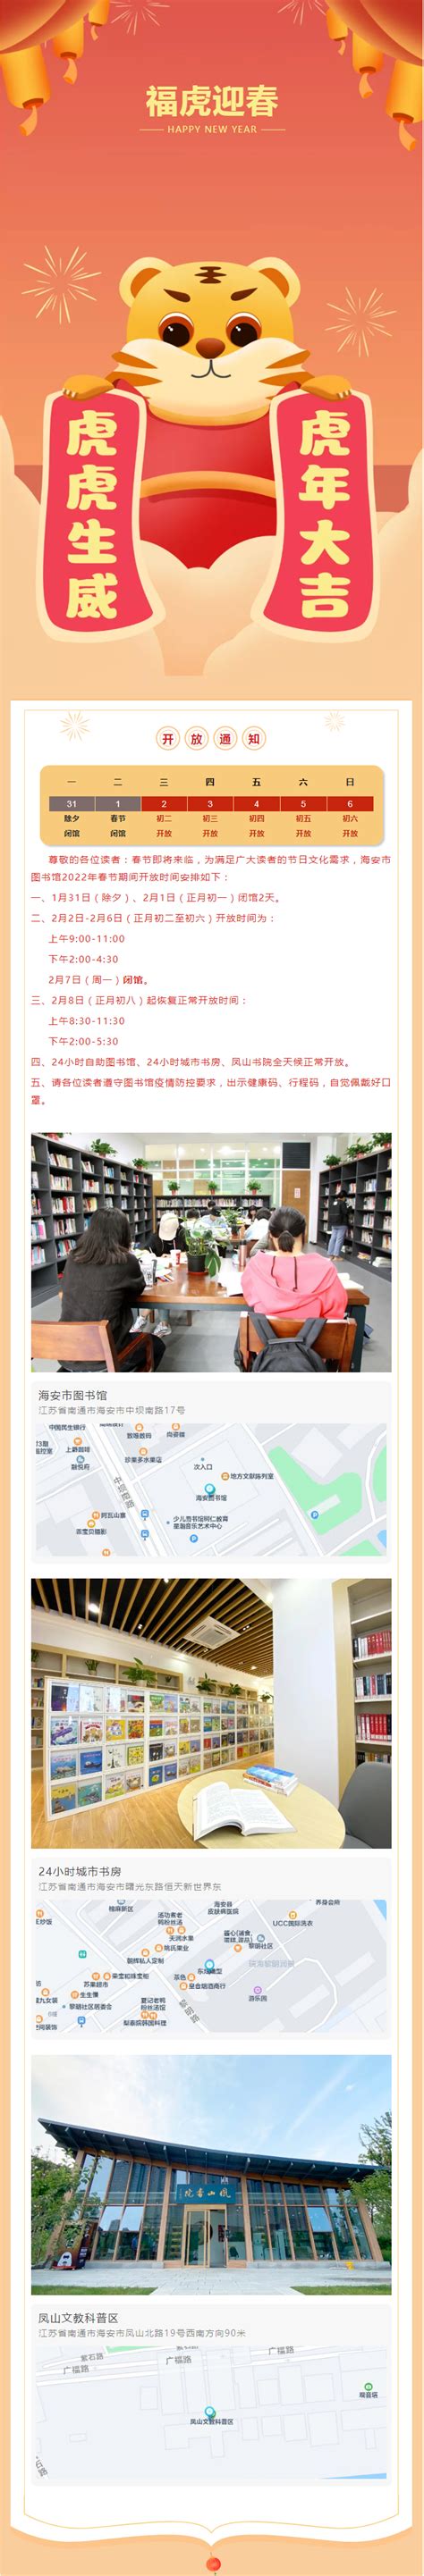 海安市图书馆2022年春节期间开放通知 - 通知公告 - 新闻动态 - 关于我们 - 海安市图书馆